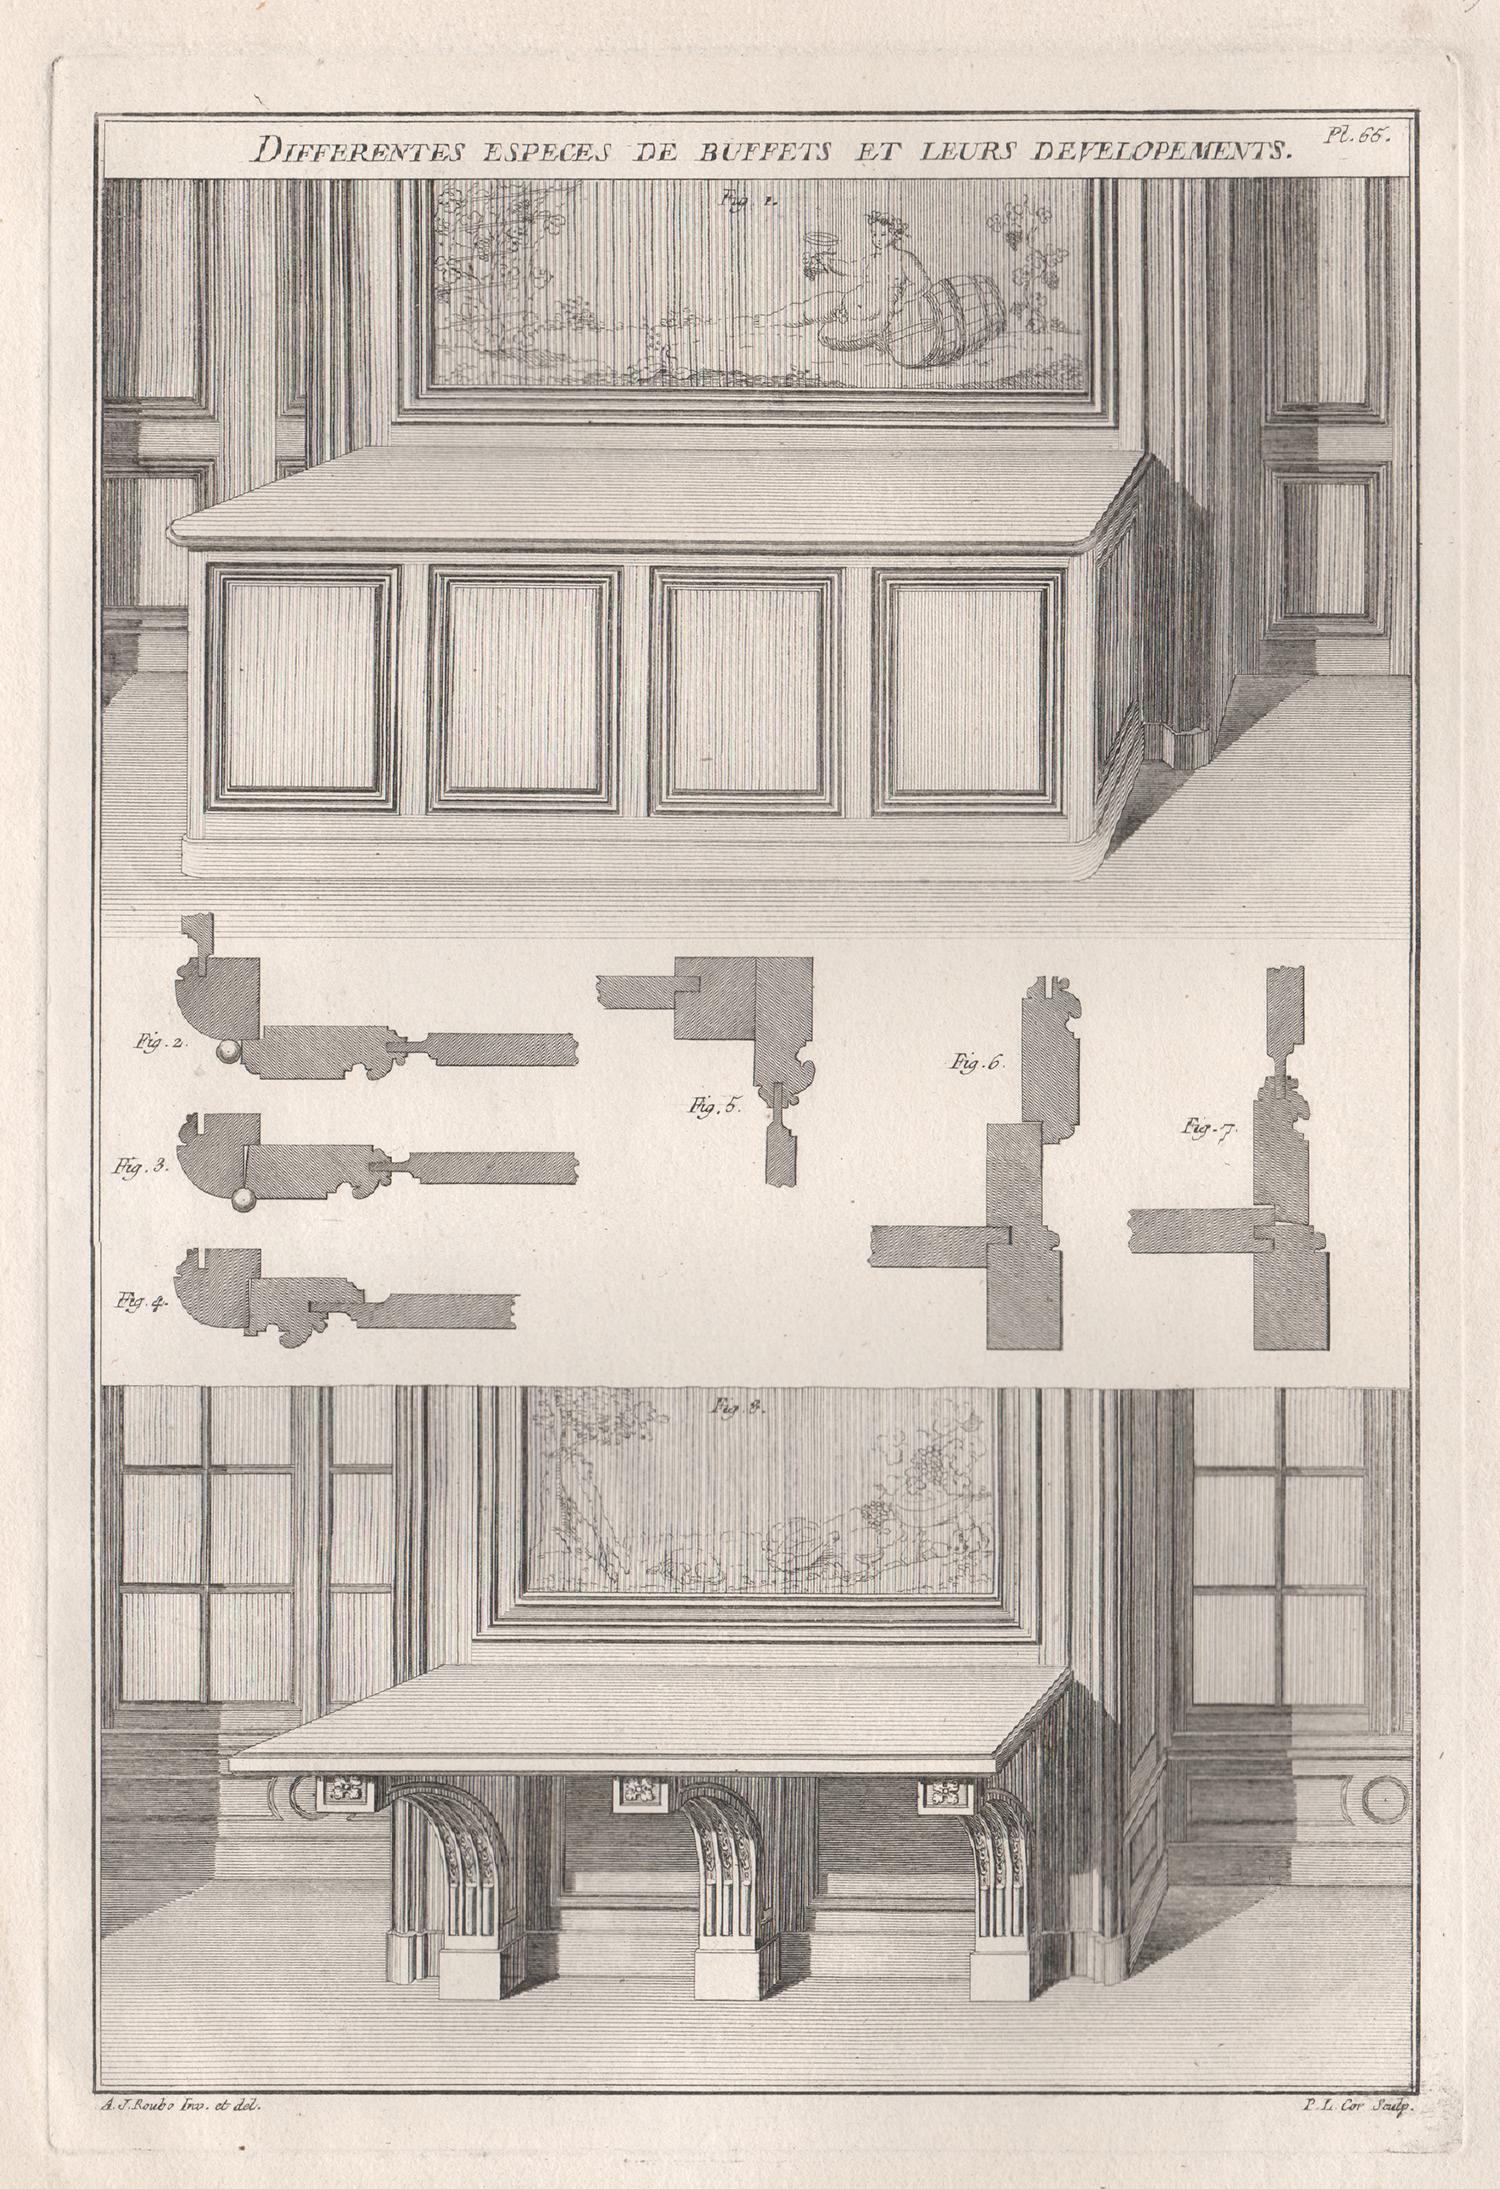 Claude Louis Chatelet Interior Print - Différentes Especes de Buffets et Leurs Developments, French design engraving